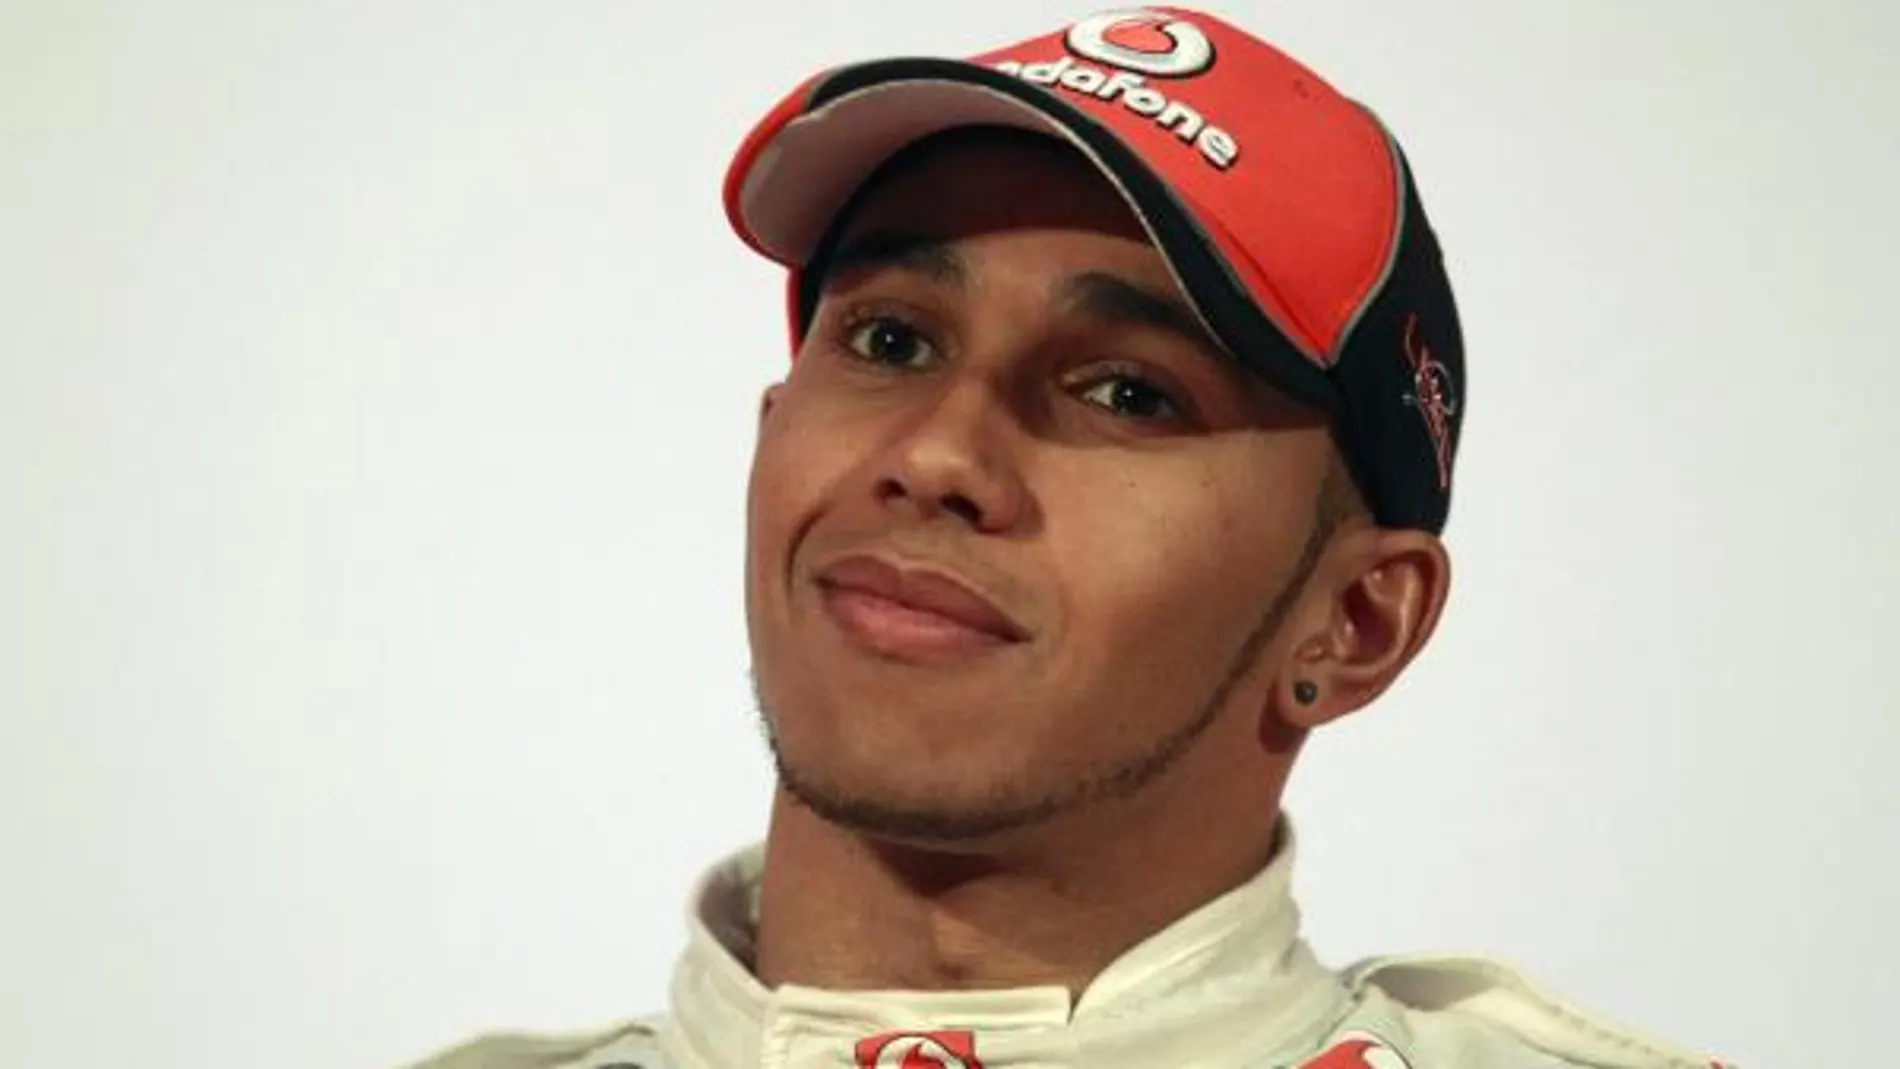 Hamilton asegura que su nuevo coche le transmite buenas sensaciones